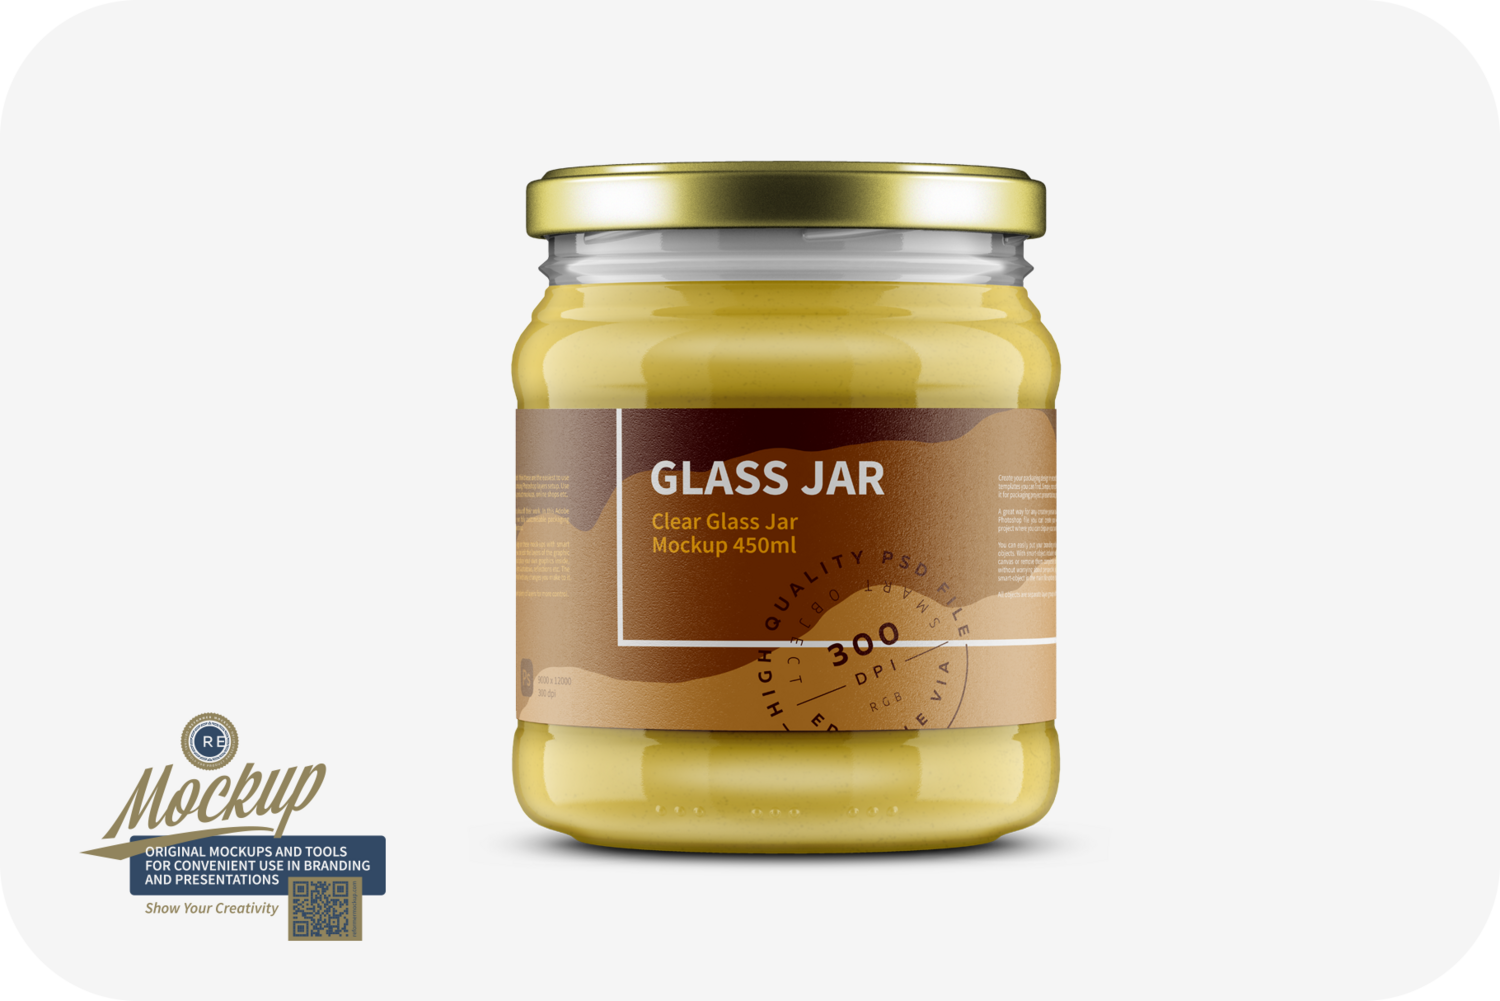 Clear Glass Jar Mockup 450ml